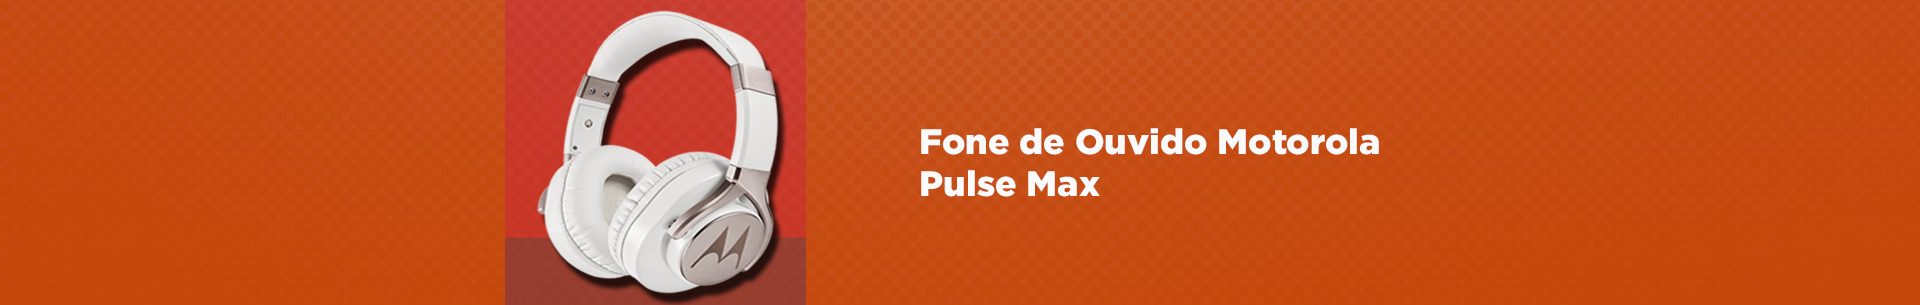 Pulse Max